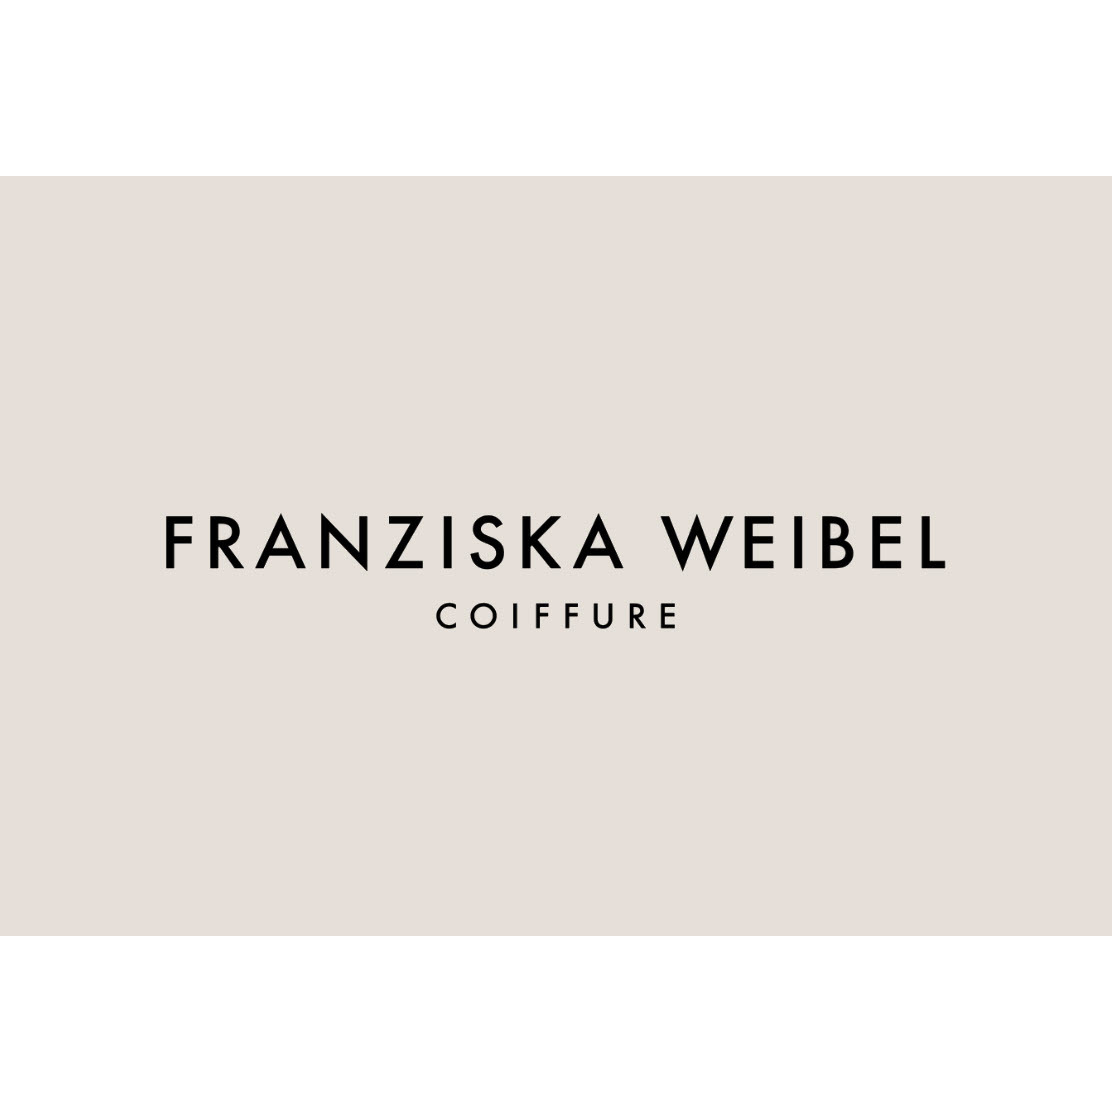 Coiffure Franziska Weibel Logo